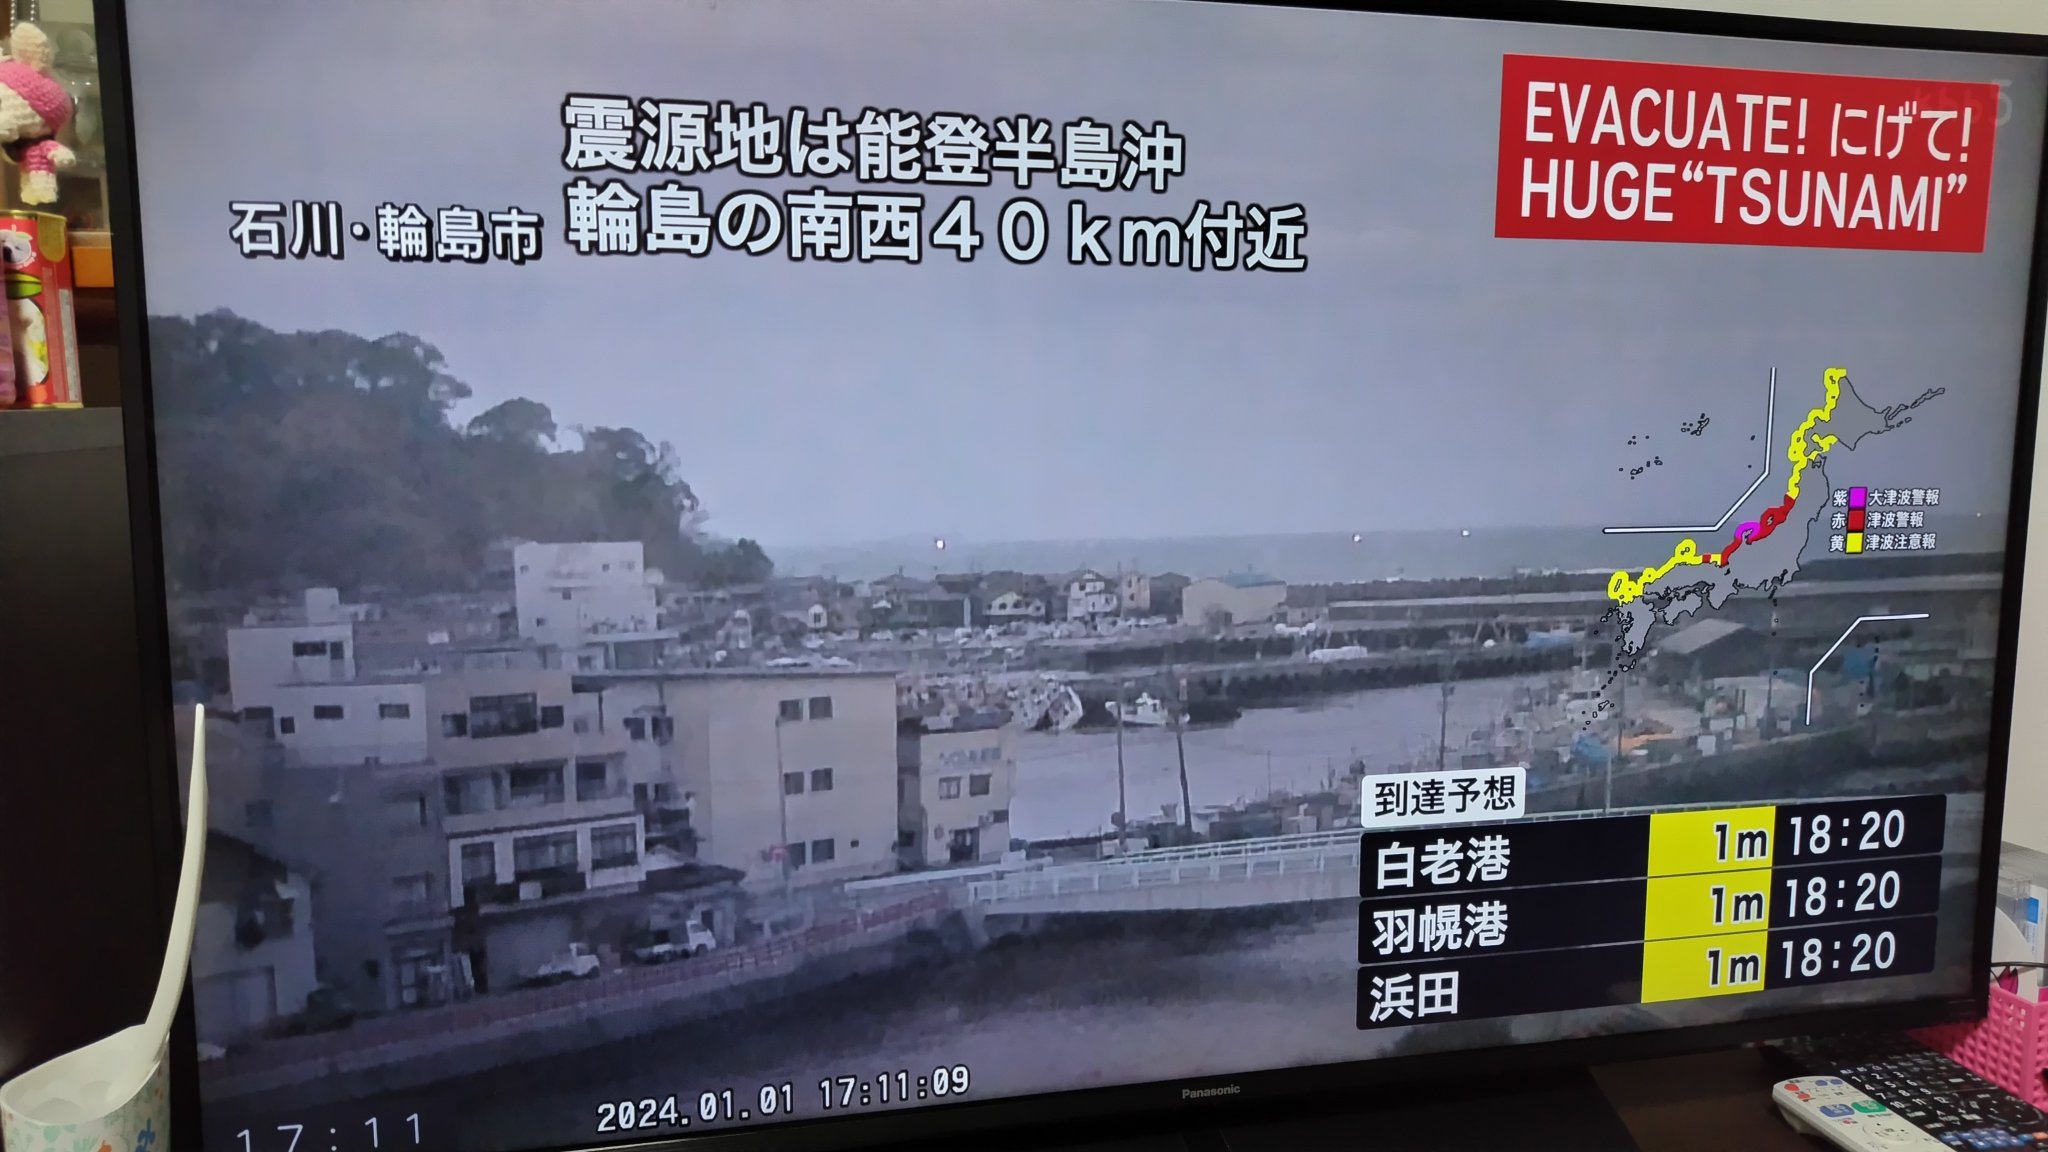 Ιαπωνία- Καταστροφικός σεισμός 7,6 Ρίχτερ -Φόβοι για διαρροή ραδιενέργειας: Τσουνάμι έπληξε τις ακτές, βγήκαν καράβια στην στεριά – Συγκλονιστικά βίντεο